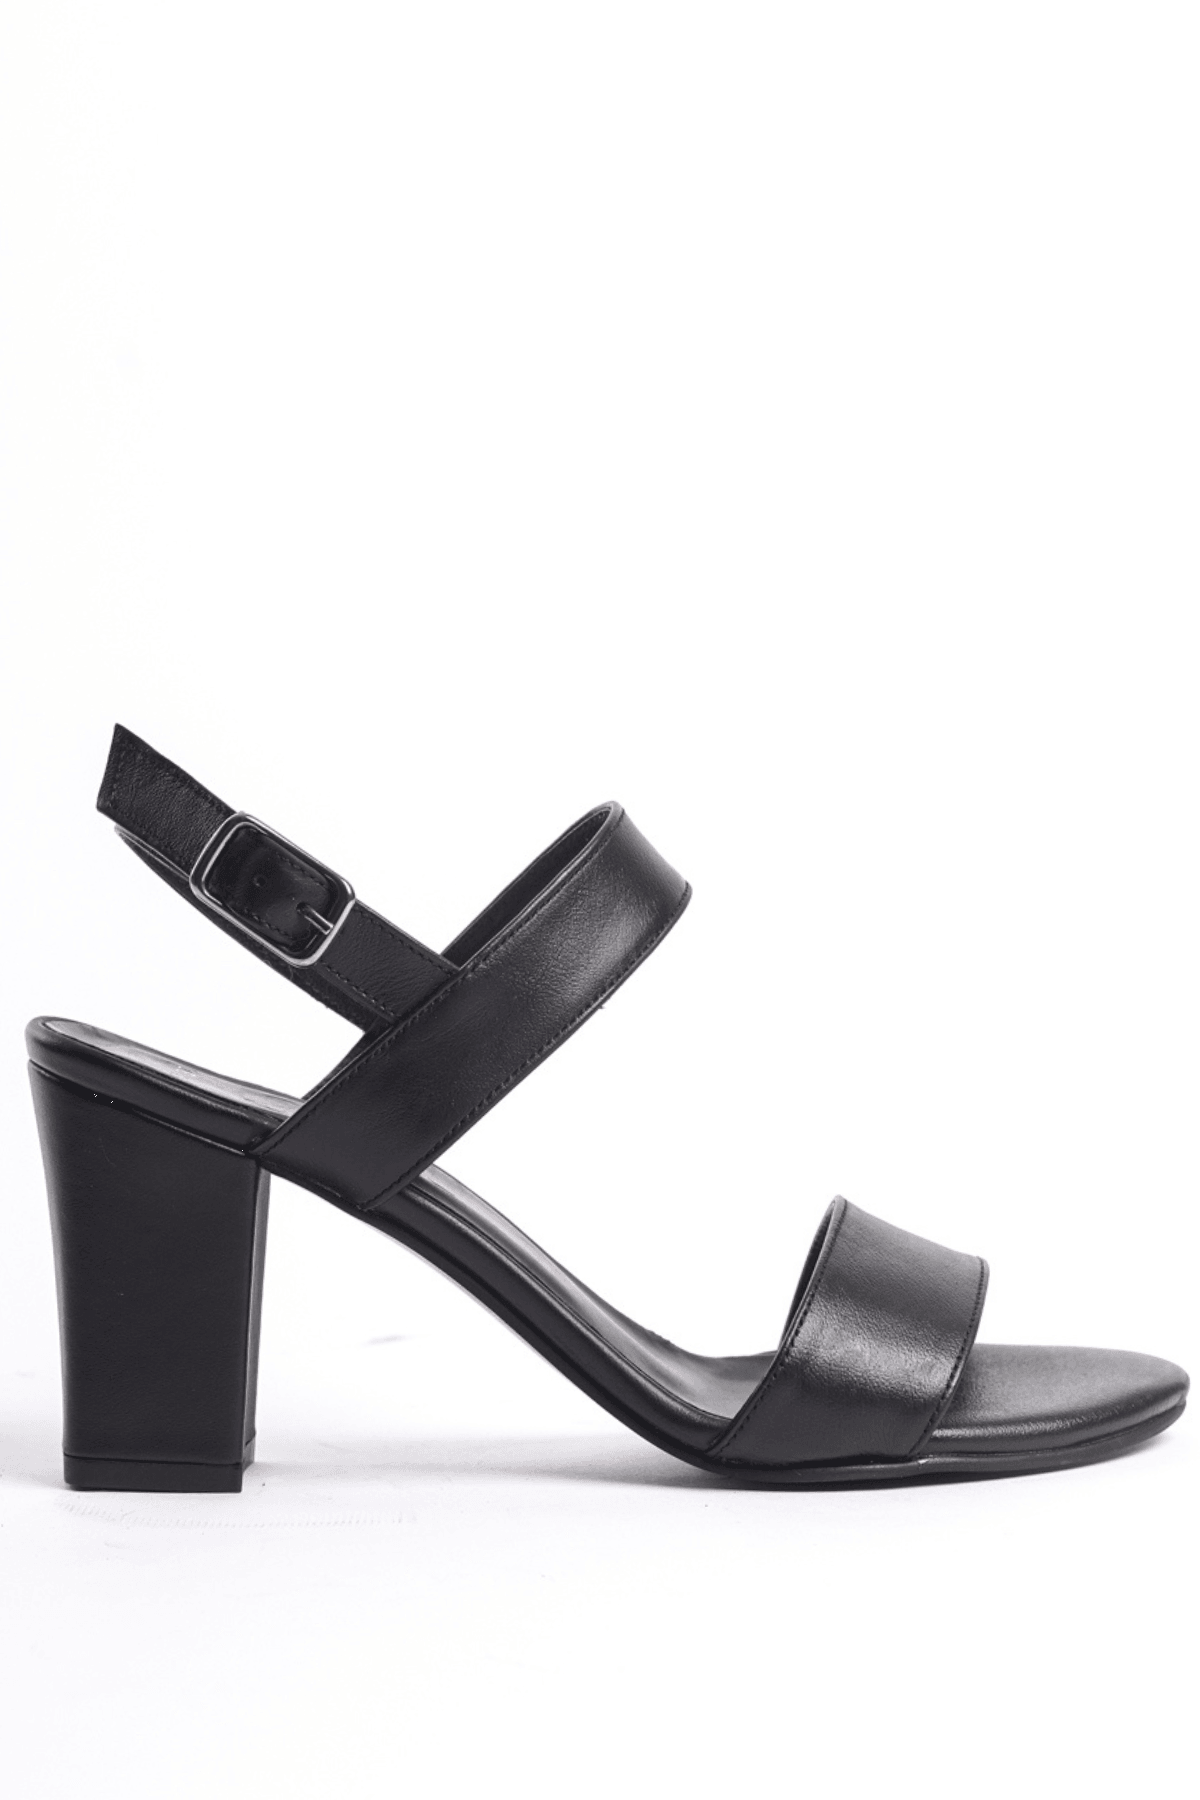 Kadın Hakiki Deri Bantlı Sandalet Kalın Topuklu Ayakkabı - Siyah